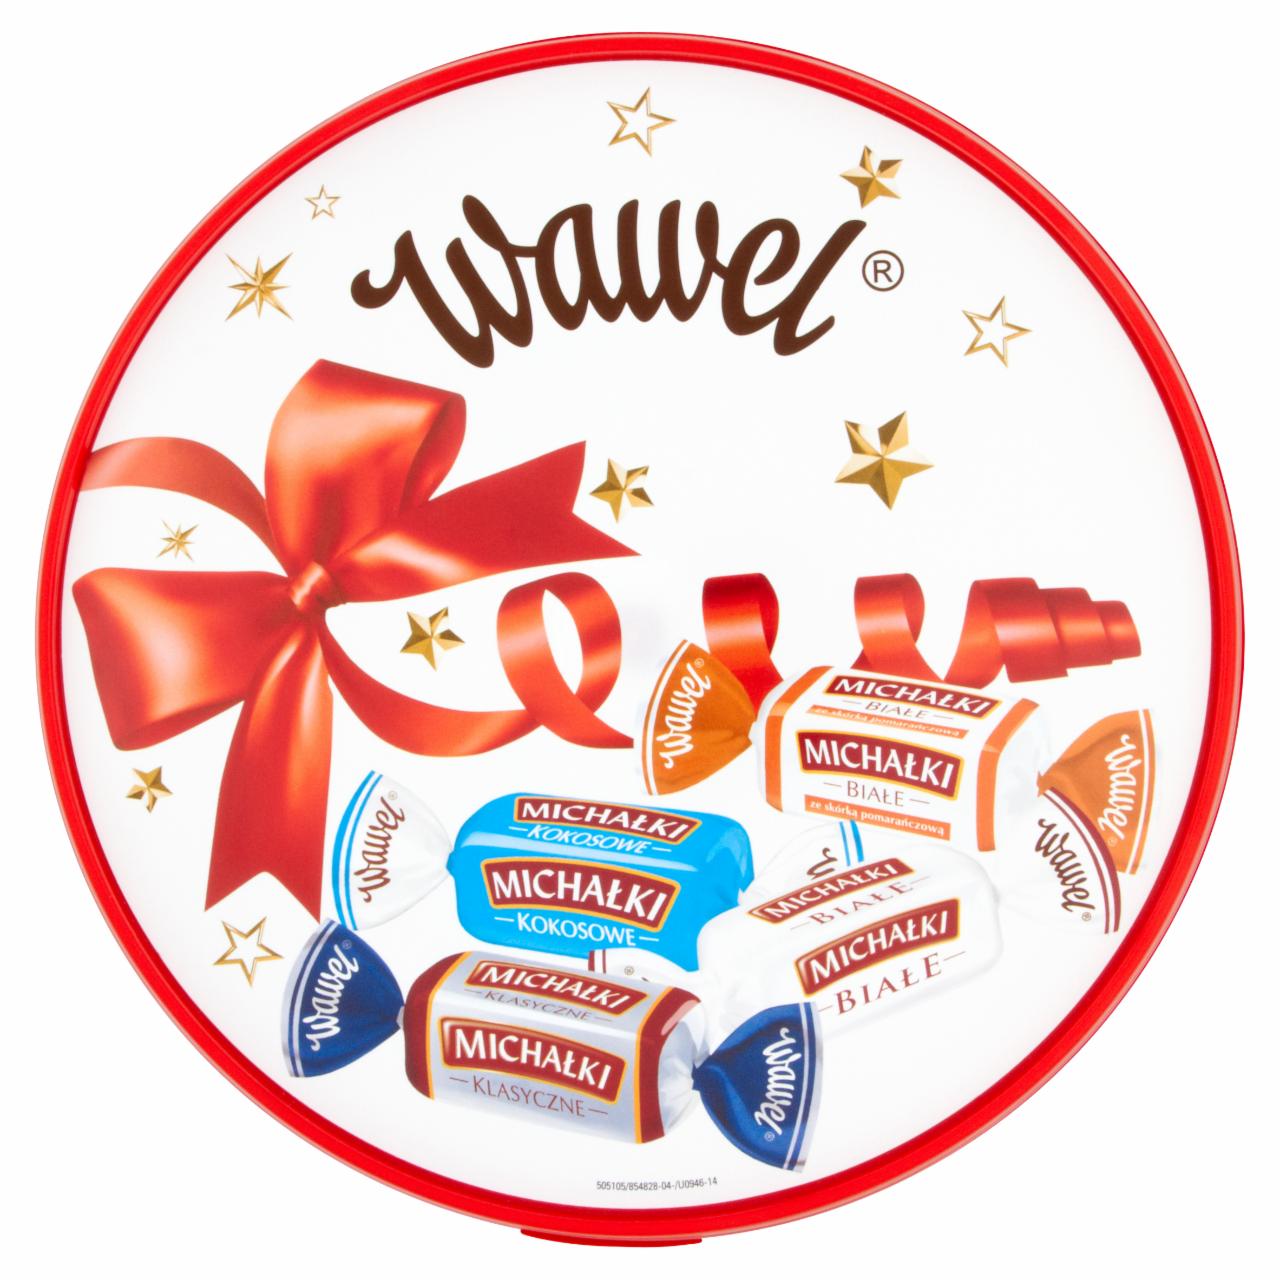 Zdjęcia - Wawel Mix Michałków Mieszanka cukierków w czekoladzie i w białej polewie 800 g